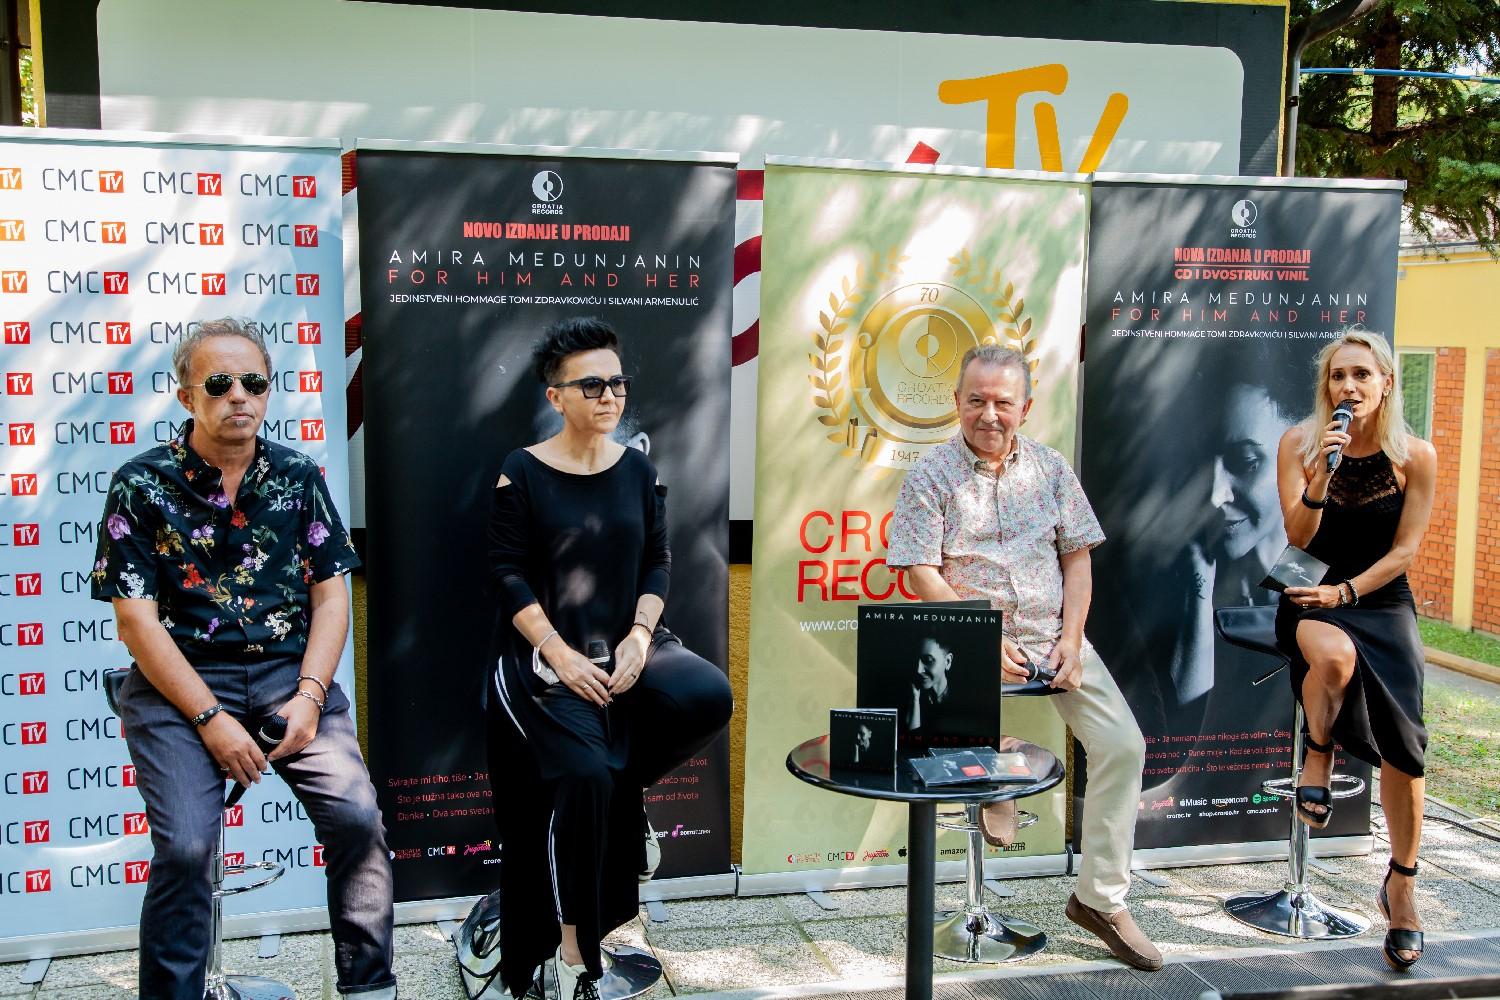 Amira Medunjanin u Zagrebu promovirala album: Ja sam panker u duši